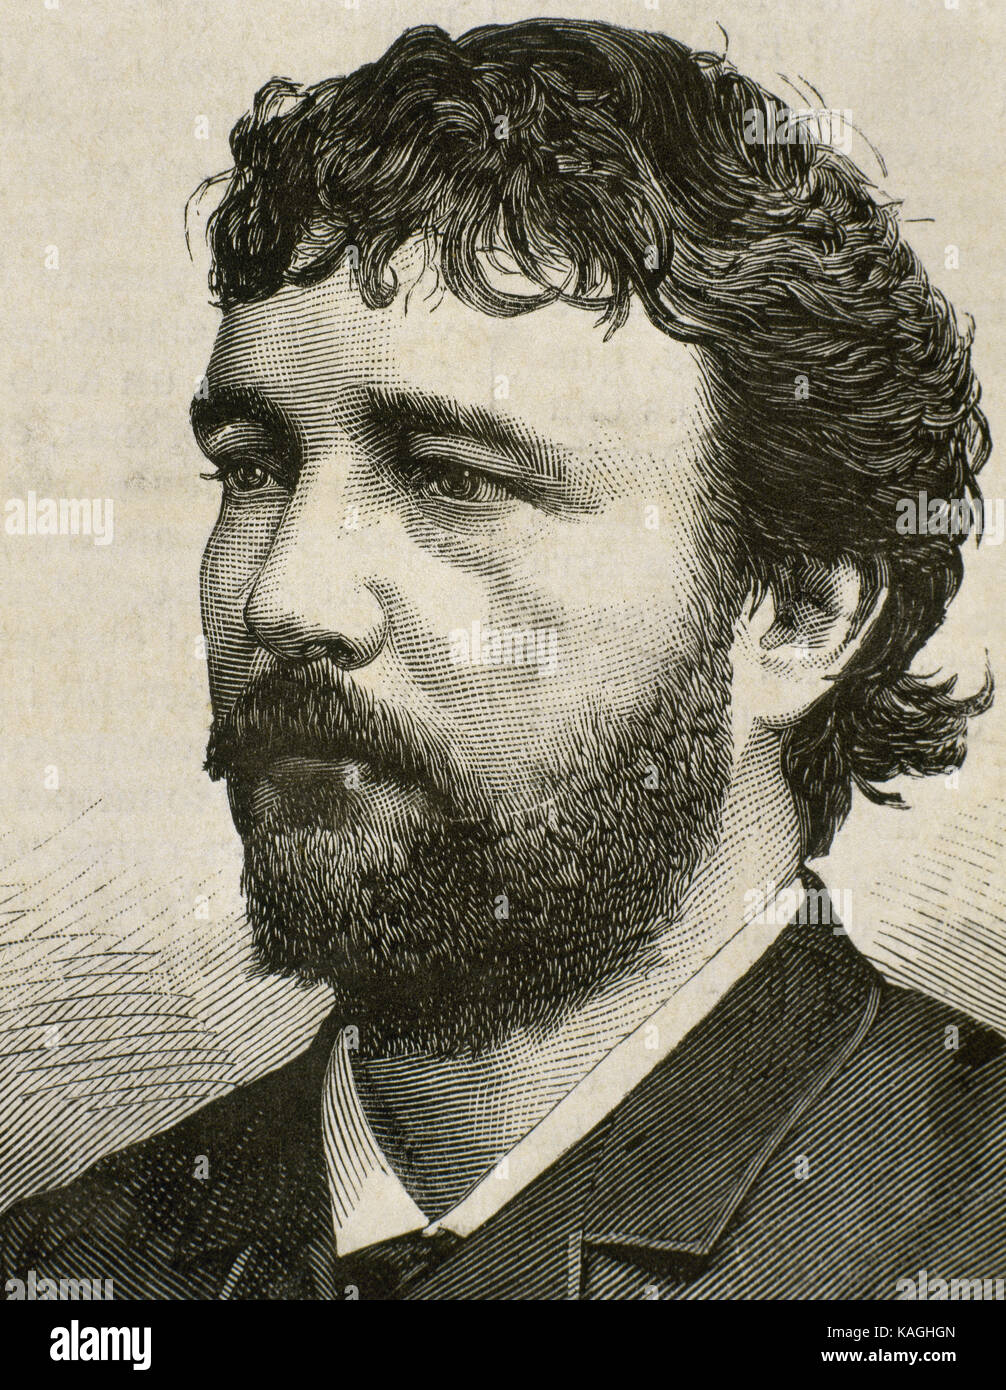 Angelo Masini (1844-1926). Italian tenor. Portrait. Engraving. 'La Ilustracion Espanola y Americana', 1882. Stock Photo